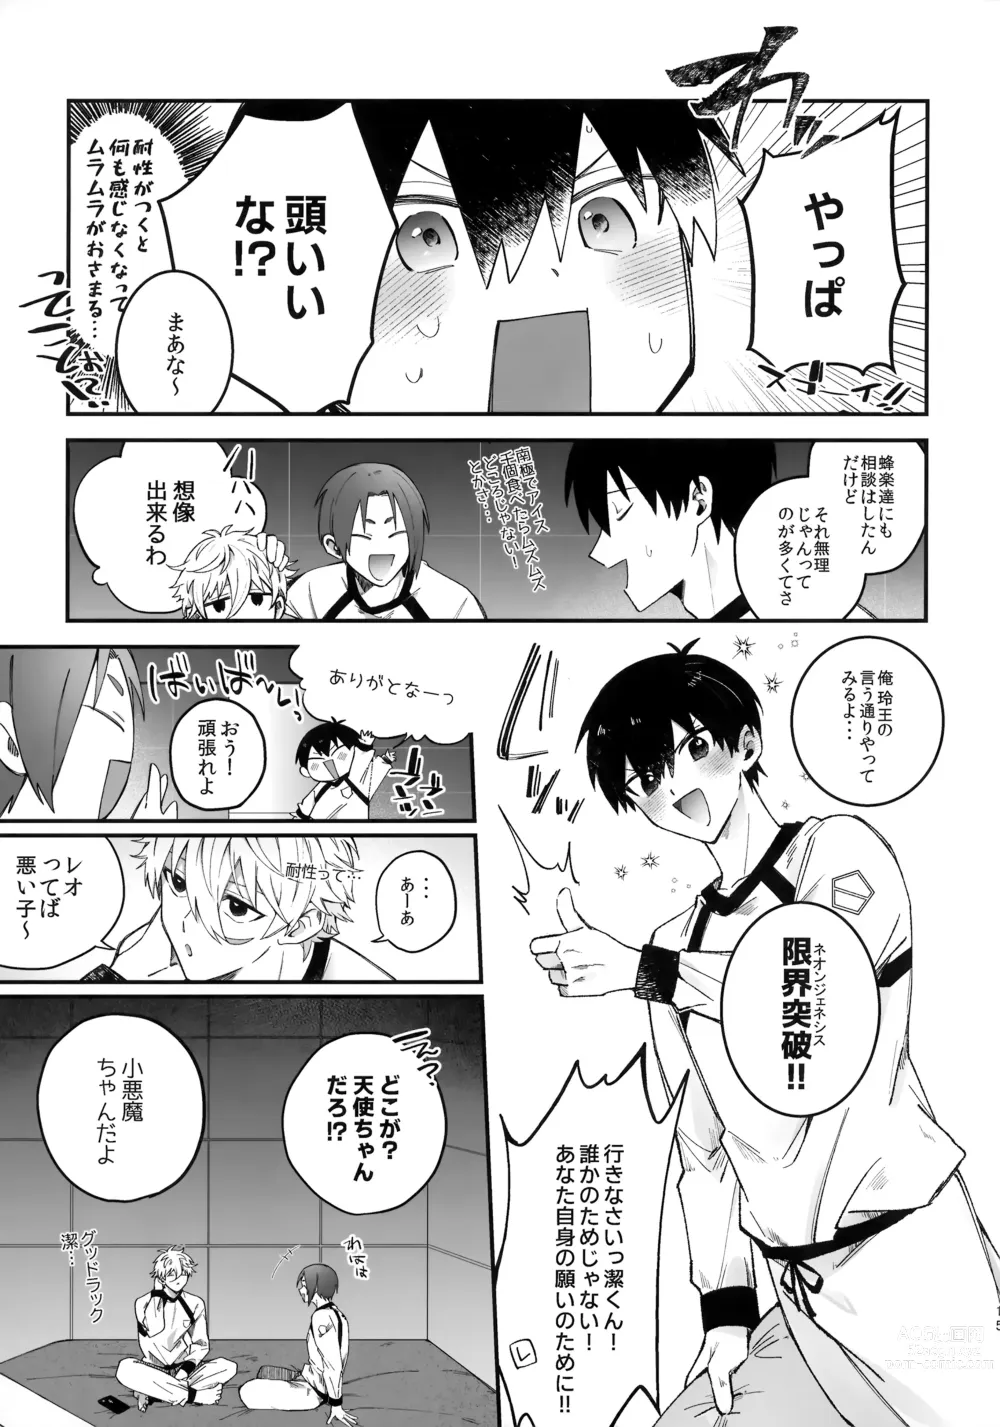 Page 14 of doujinshi Omae nashi jya dame mitai